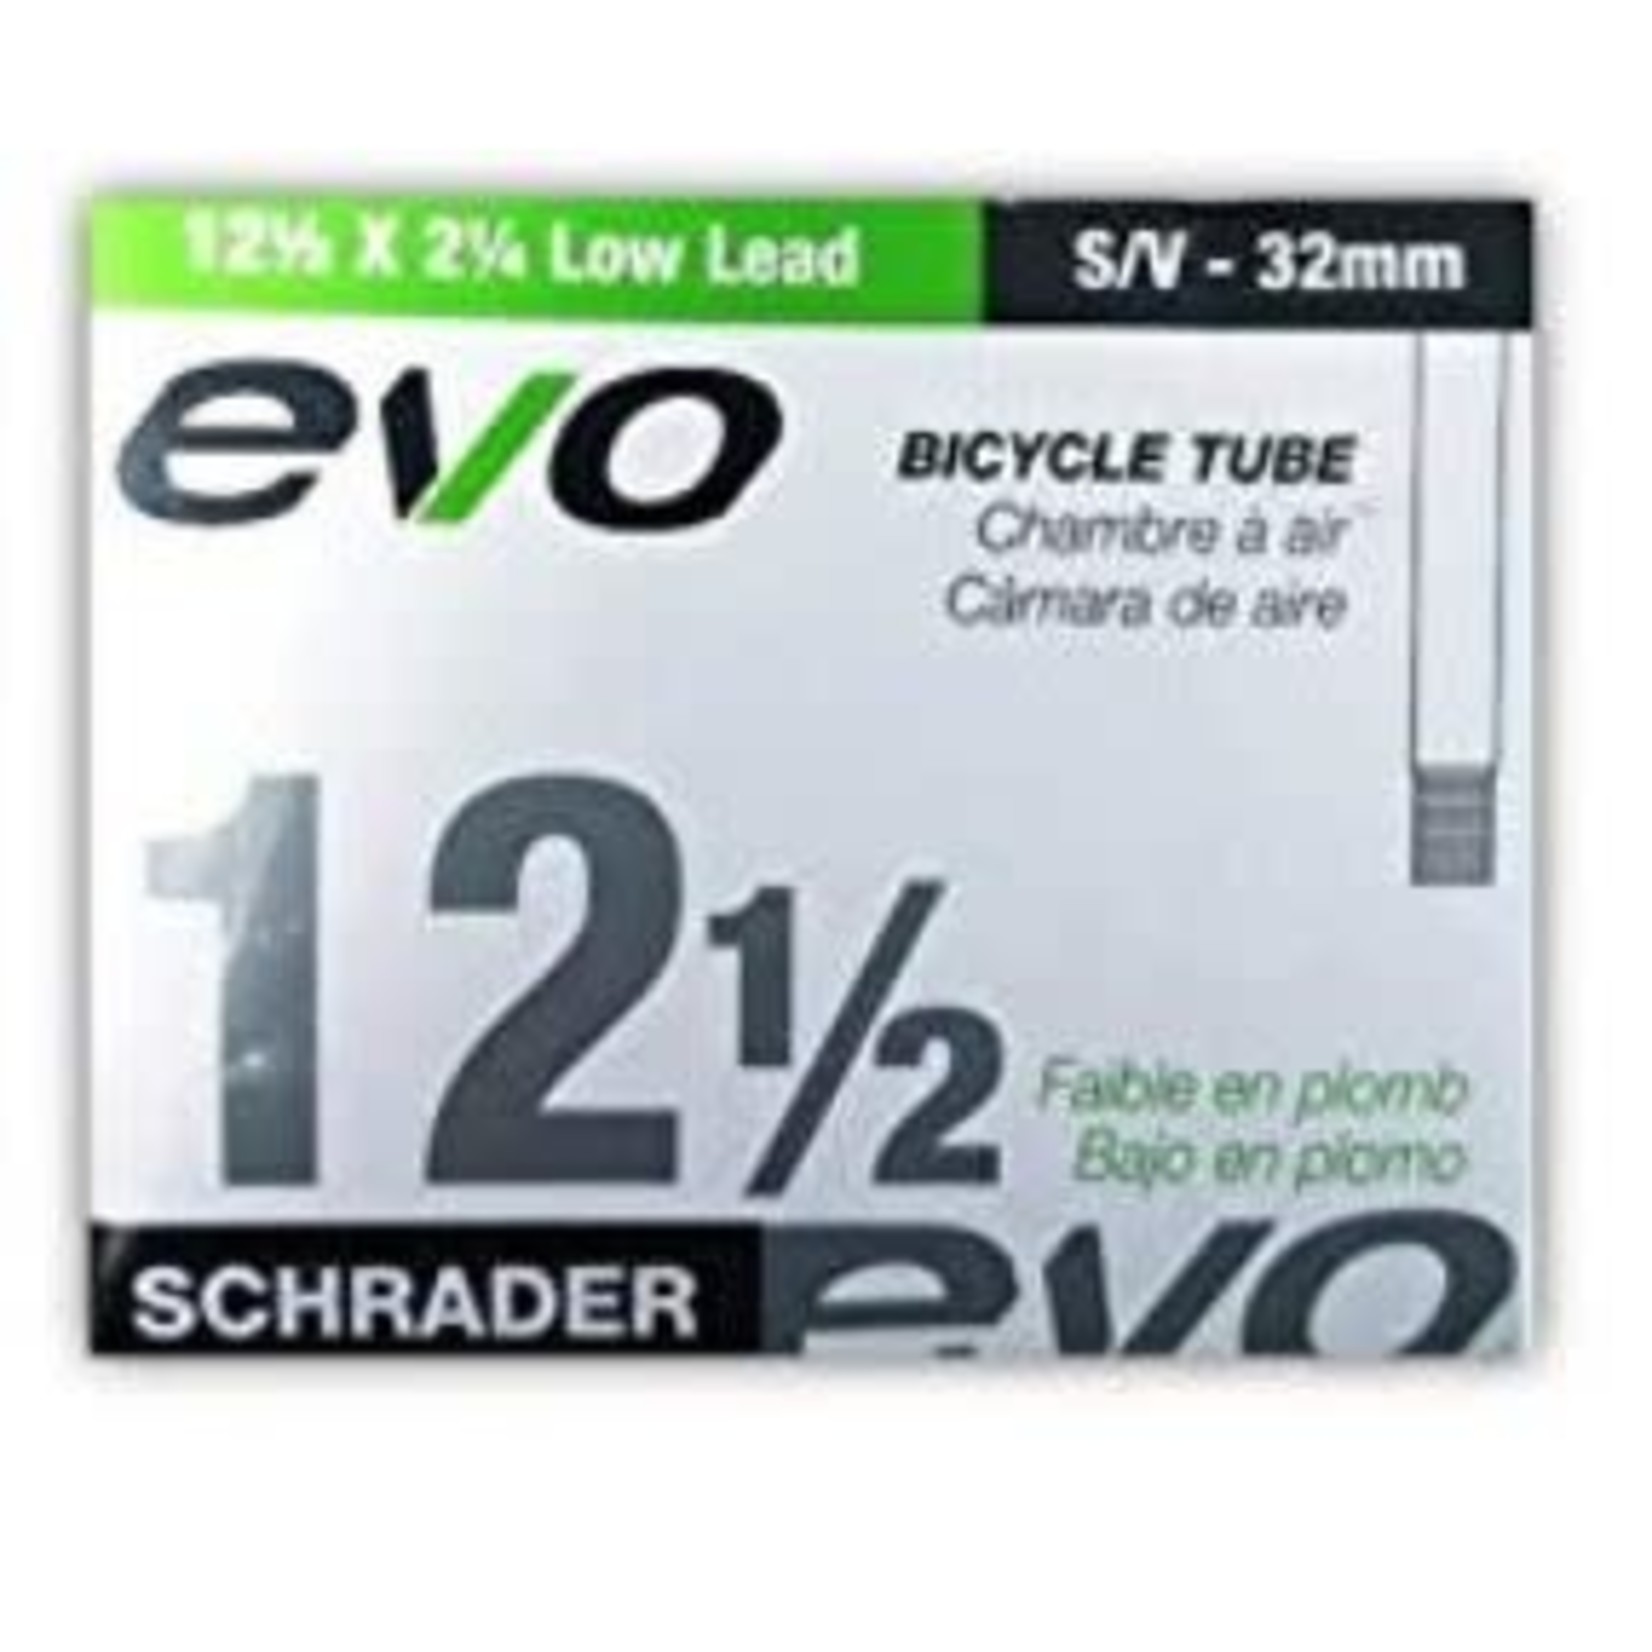 EVO, Inner tube, Schrader, 32mm, 12-1/2 x 2-1/4